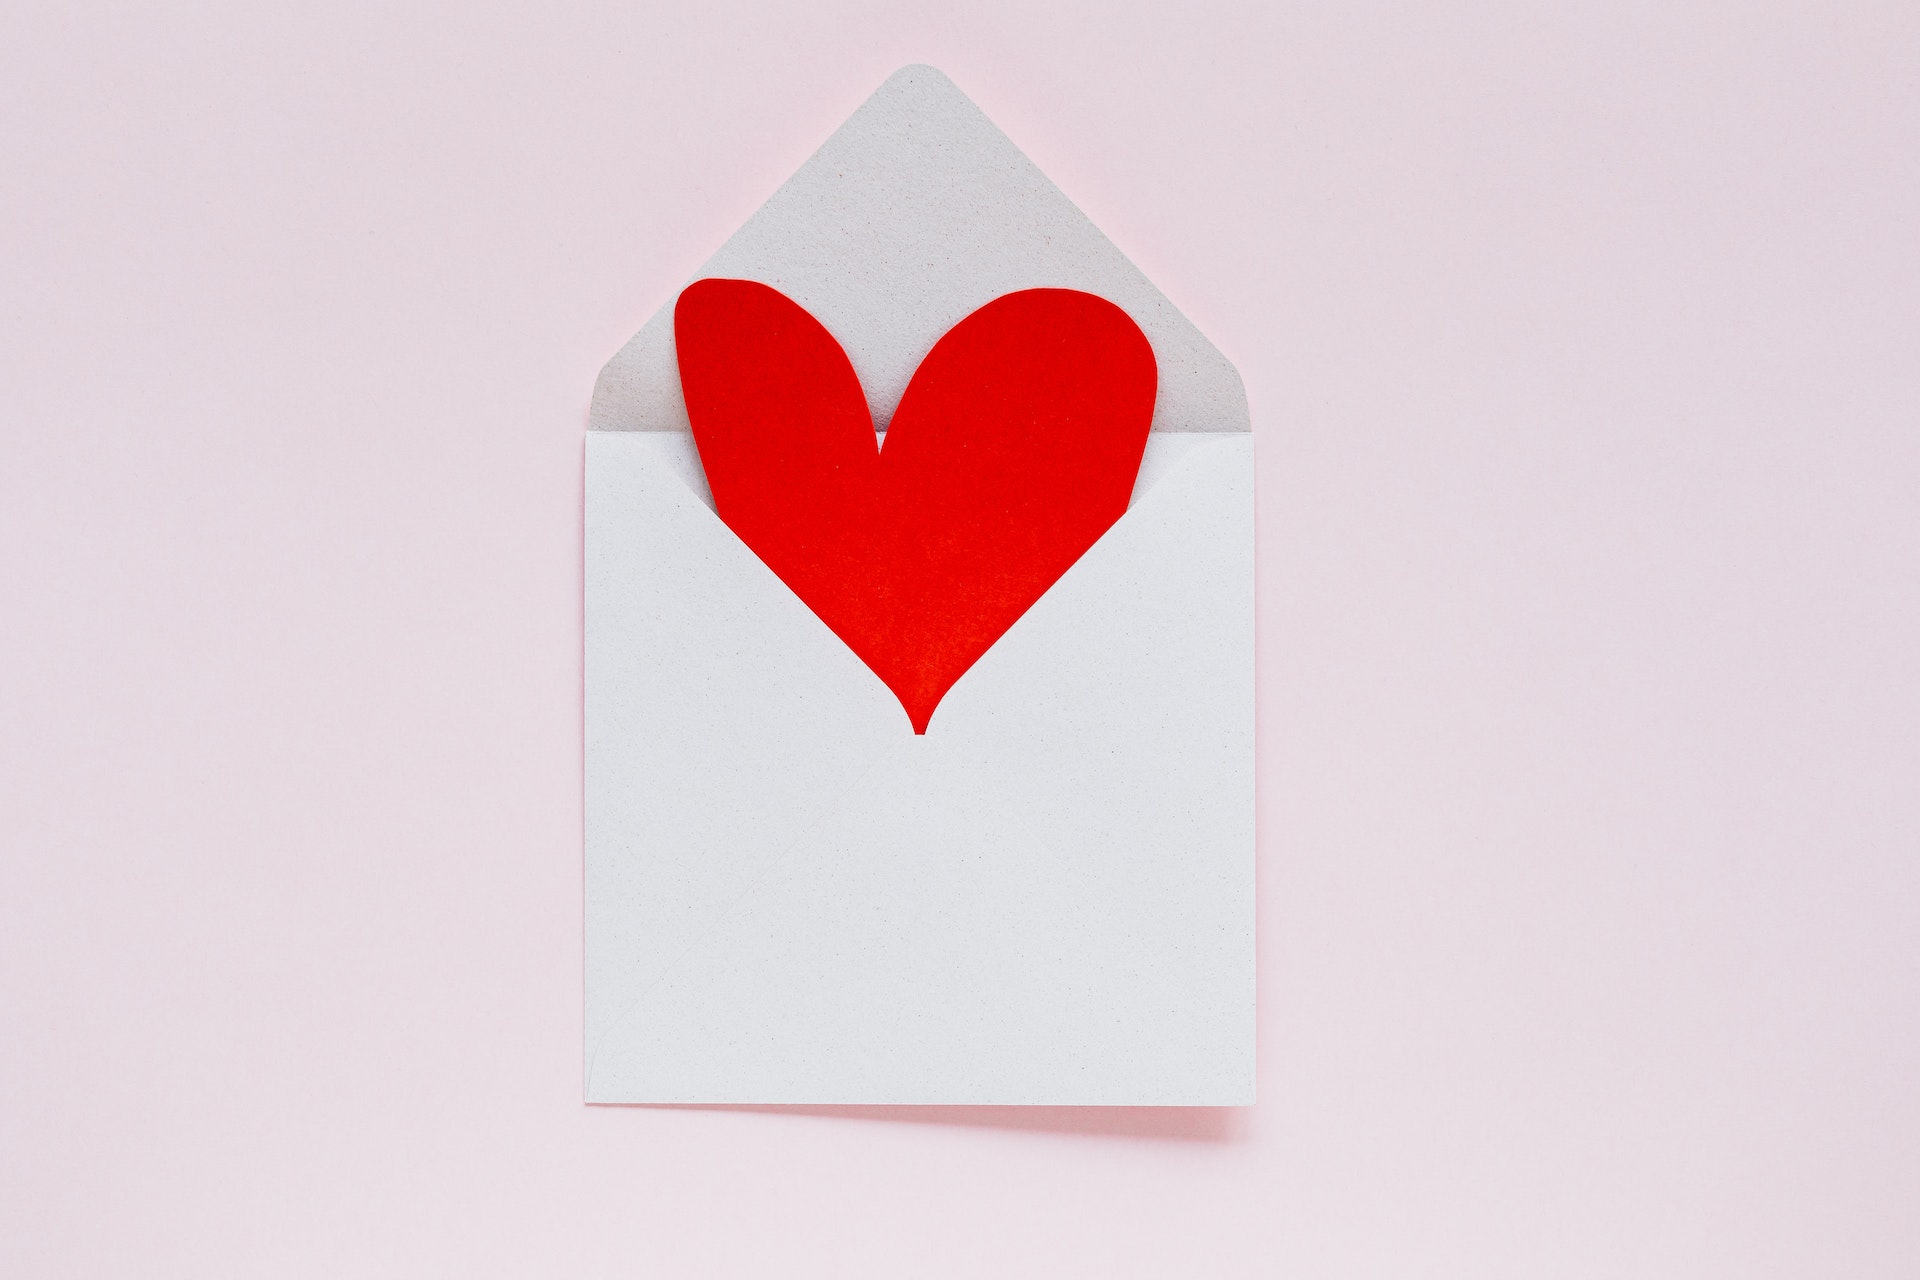 Nechaj svoje city prehovoriť vďaka aplikácii Dúhy: Pošli tajnú valentínku!